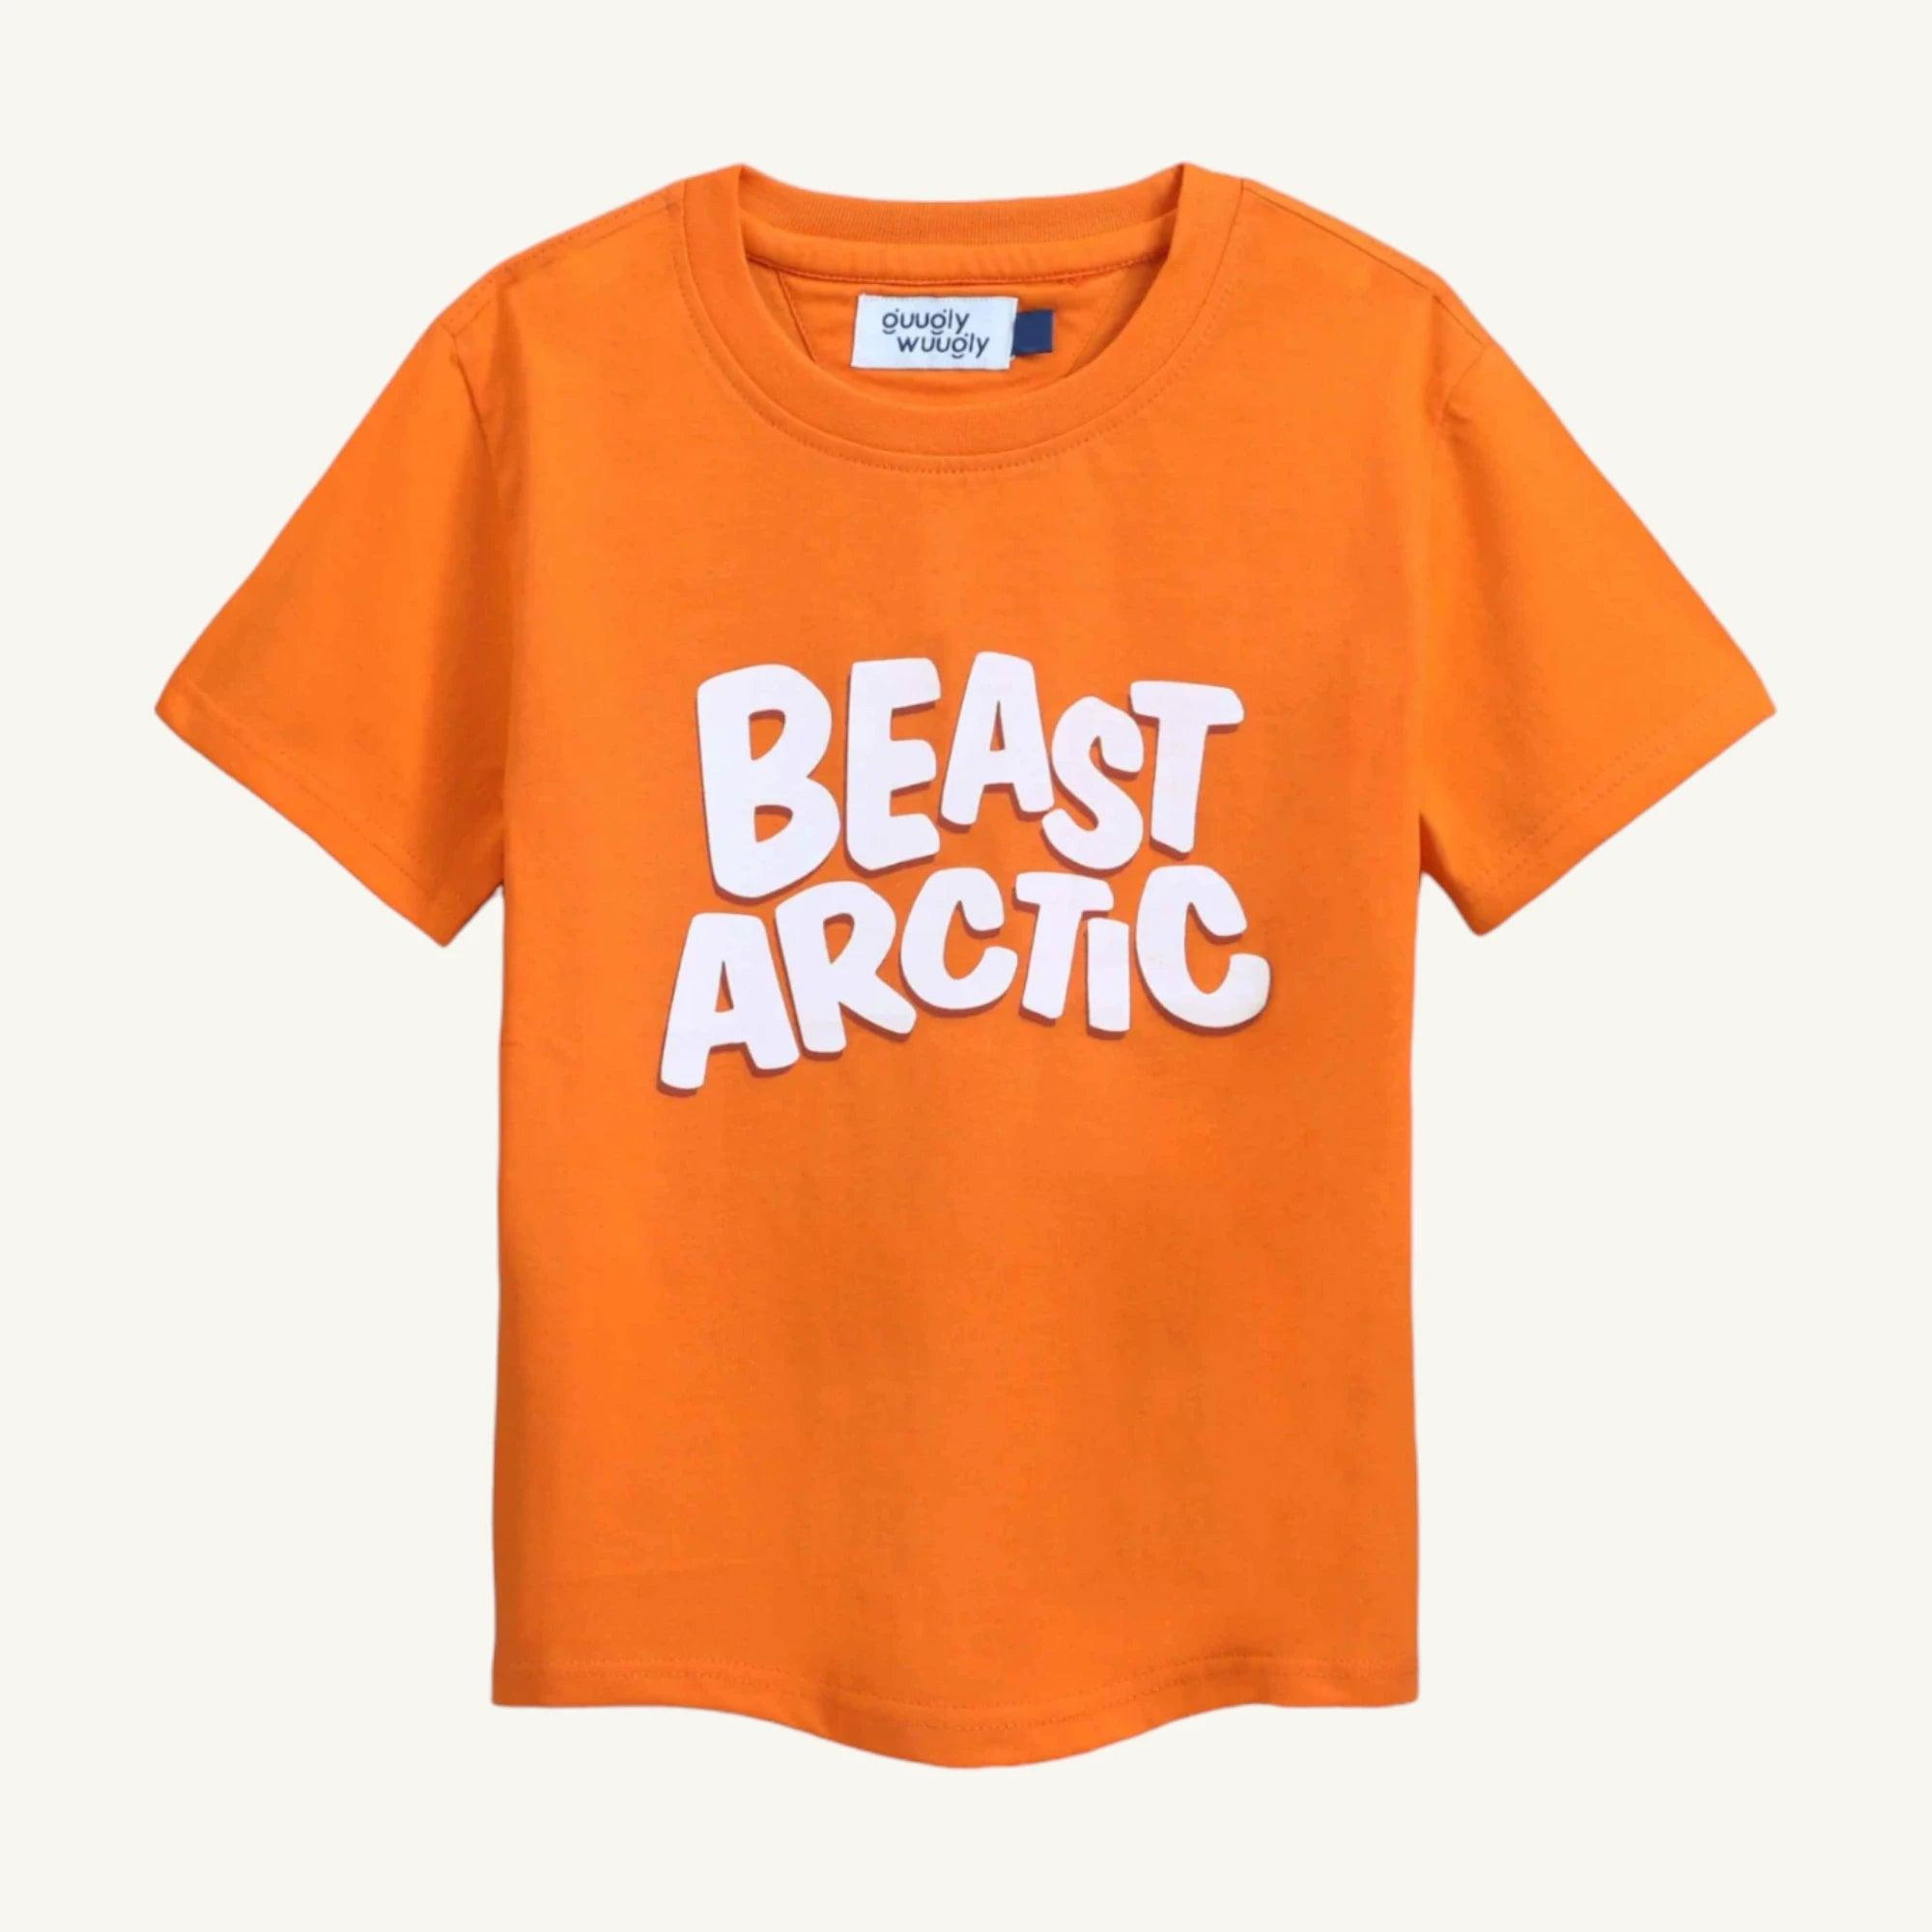 Boys Beast Artic T-shirt - Guugly Wuugly